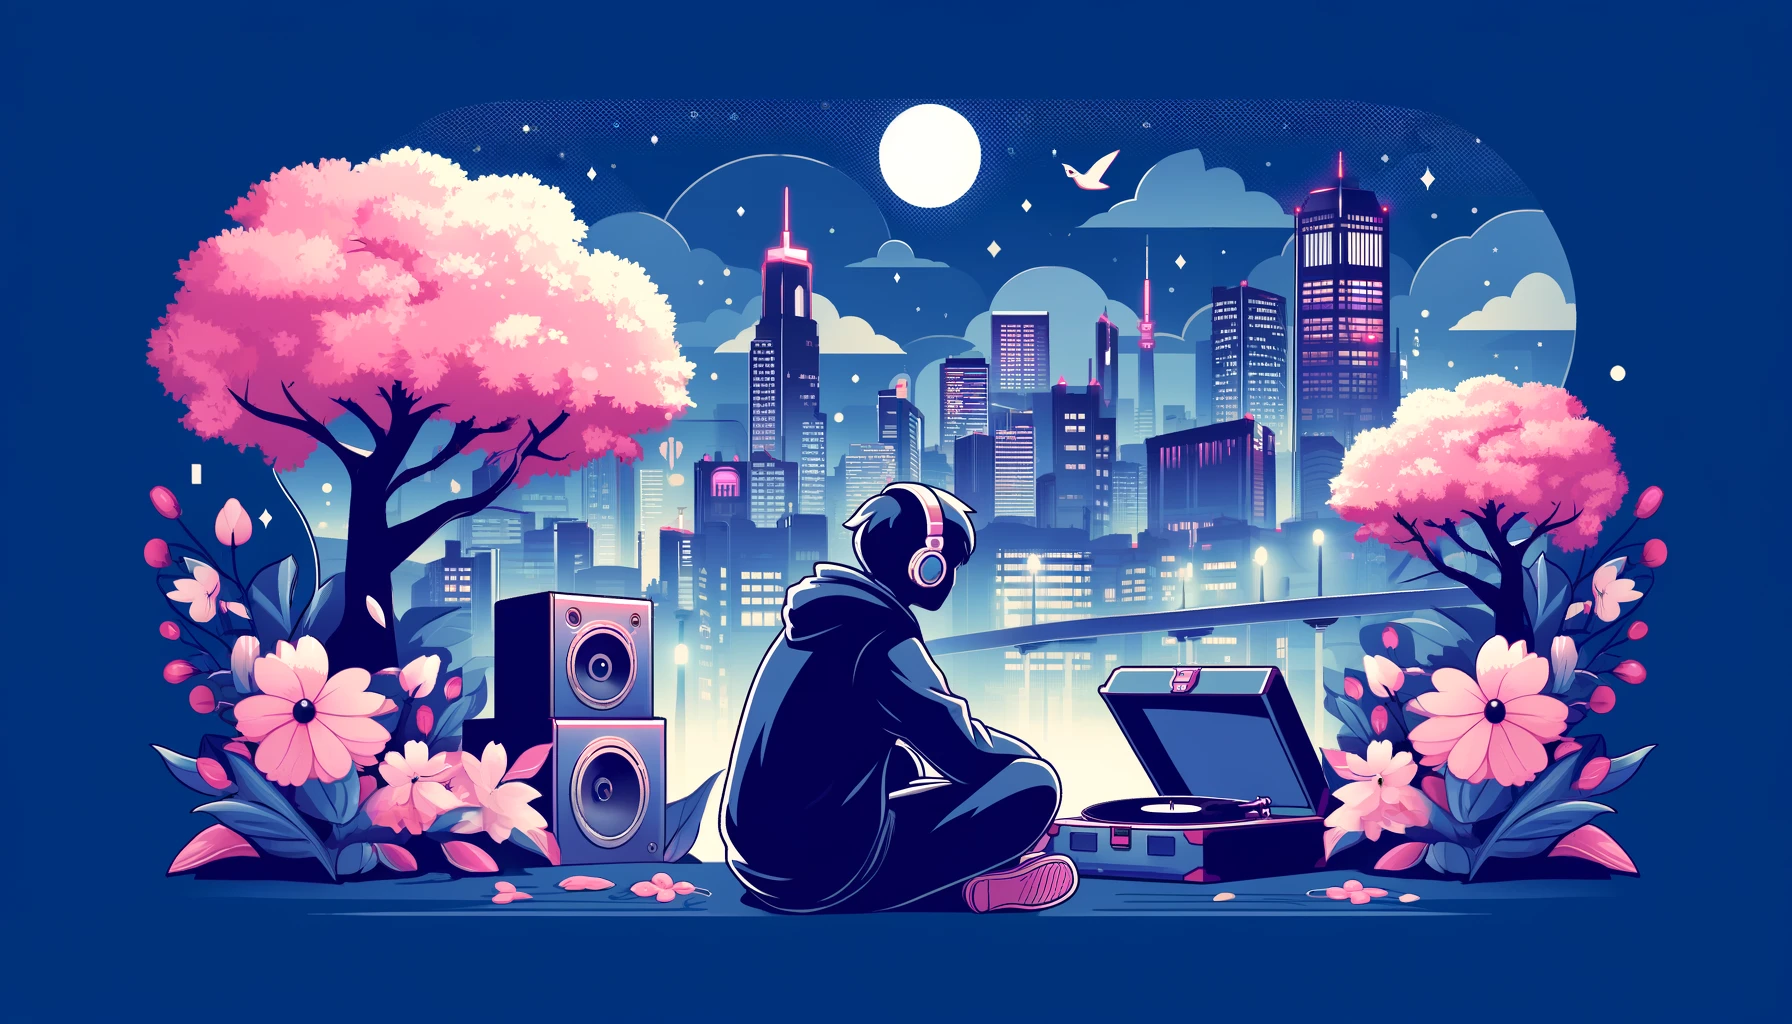 夜の日本の都市景観と桜、レコードプレーヤーとヘッドフォンを使う若者のシルエットが描かれた、Lofi Hiphop音楽のリラックスした雰囲気のアニメスタイルアイキャッチ画像